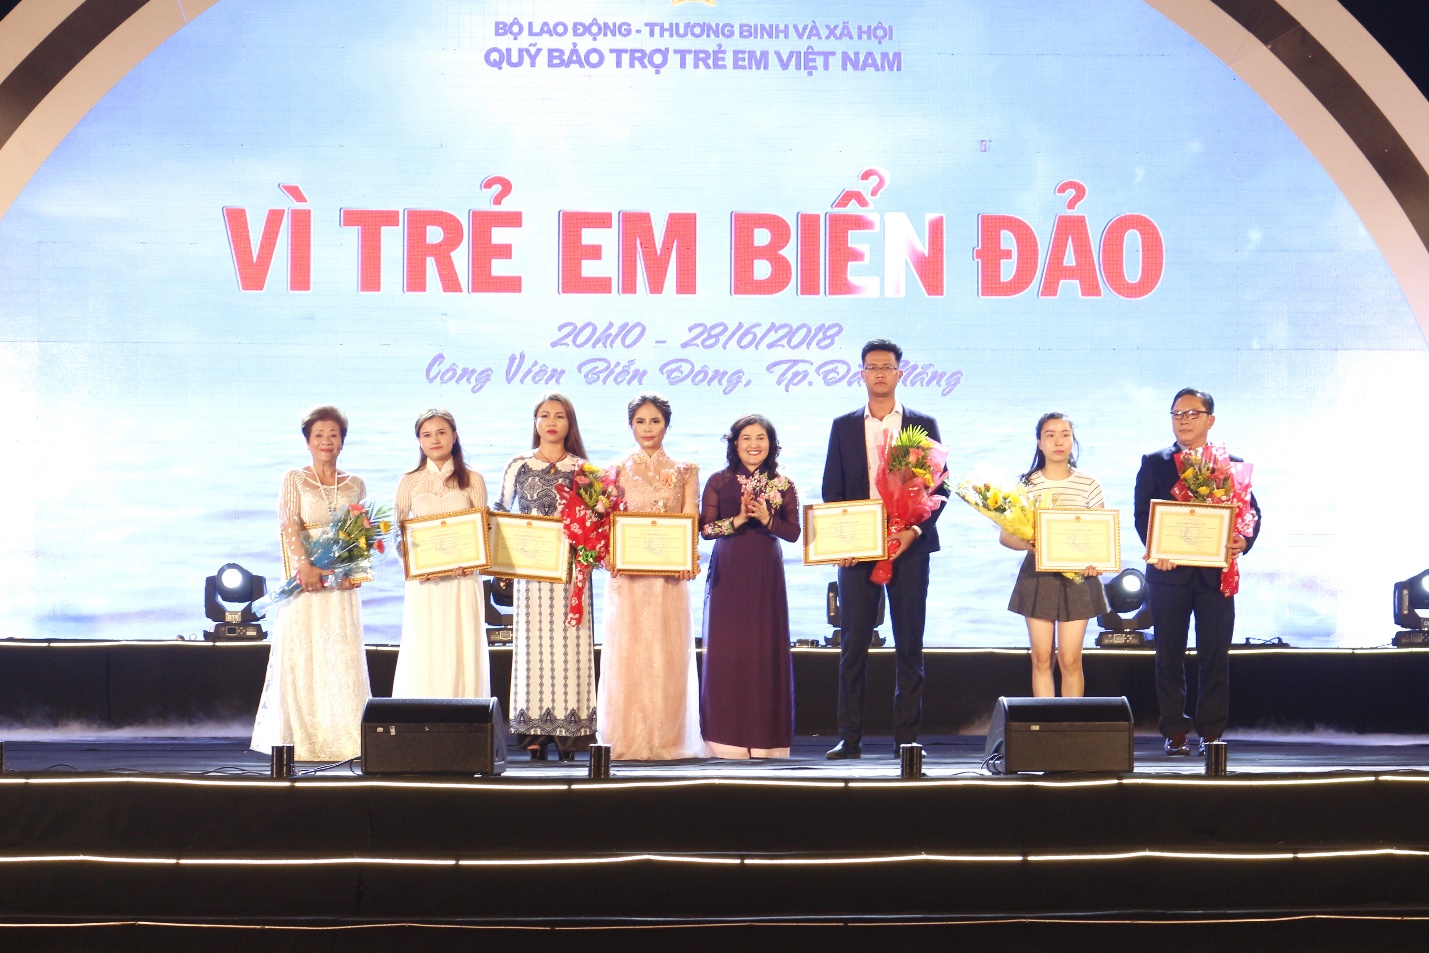 Đại diện First Real nhận bằng khen và hoa từ Quỹ bảo trợ trẻ em Việt Nam